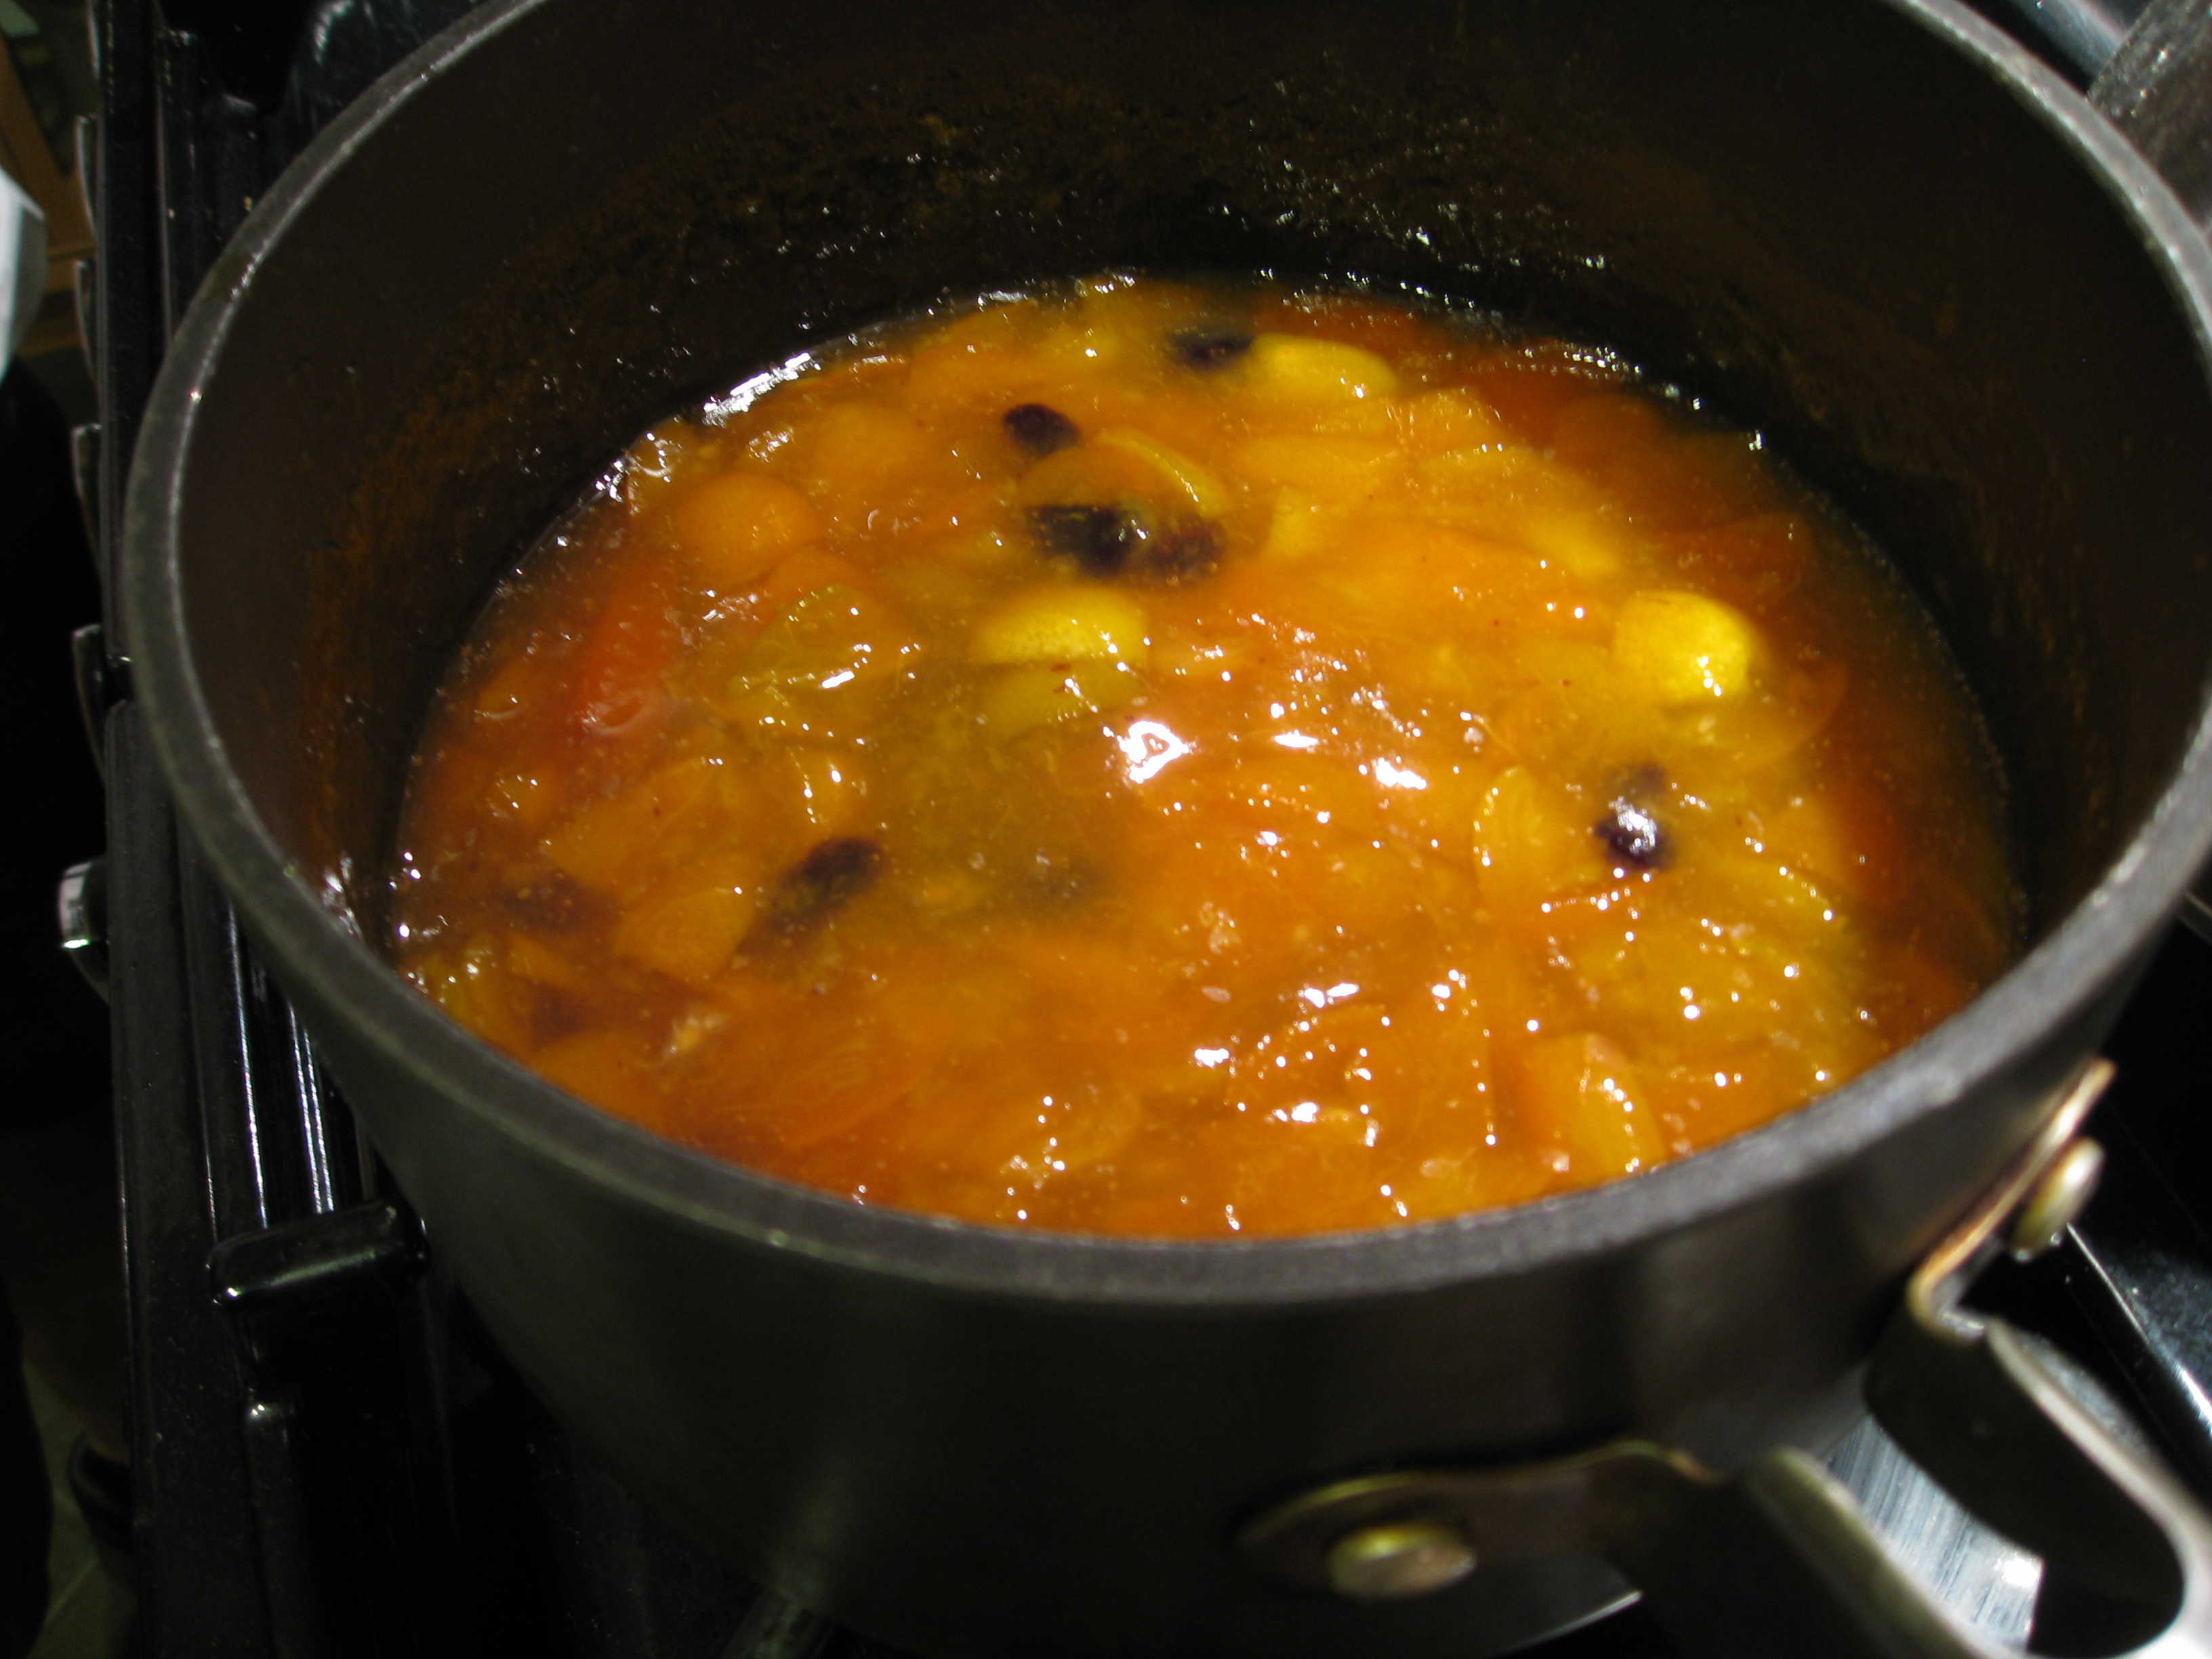 New recipe: Kumquat marmalade with raisins. 